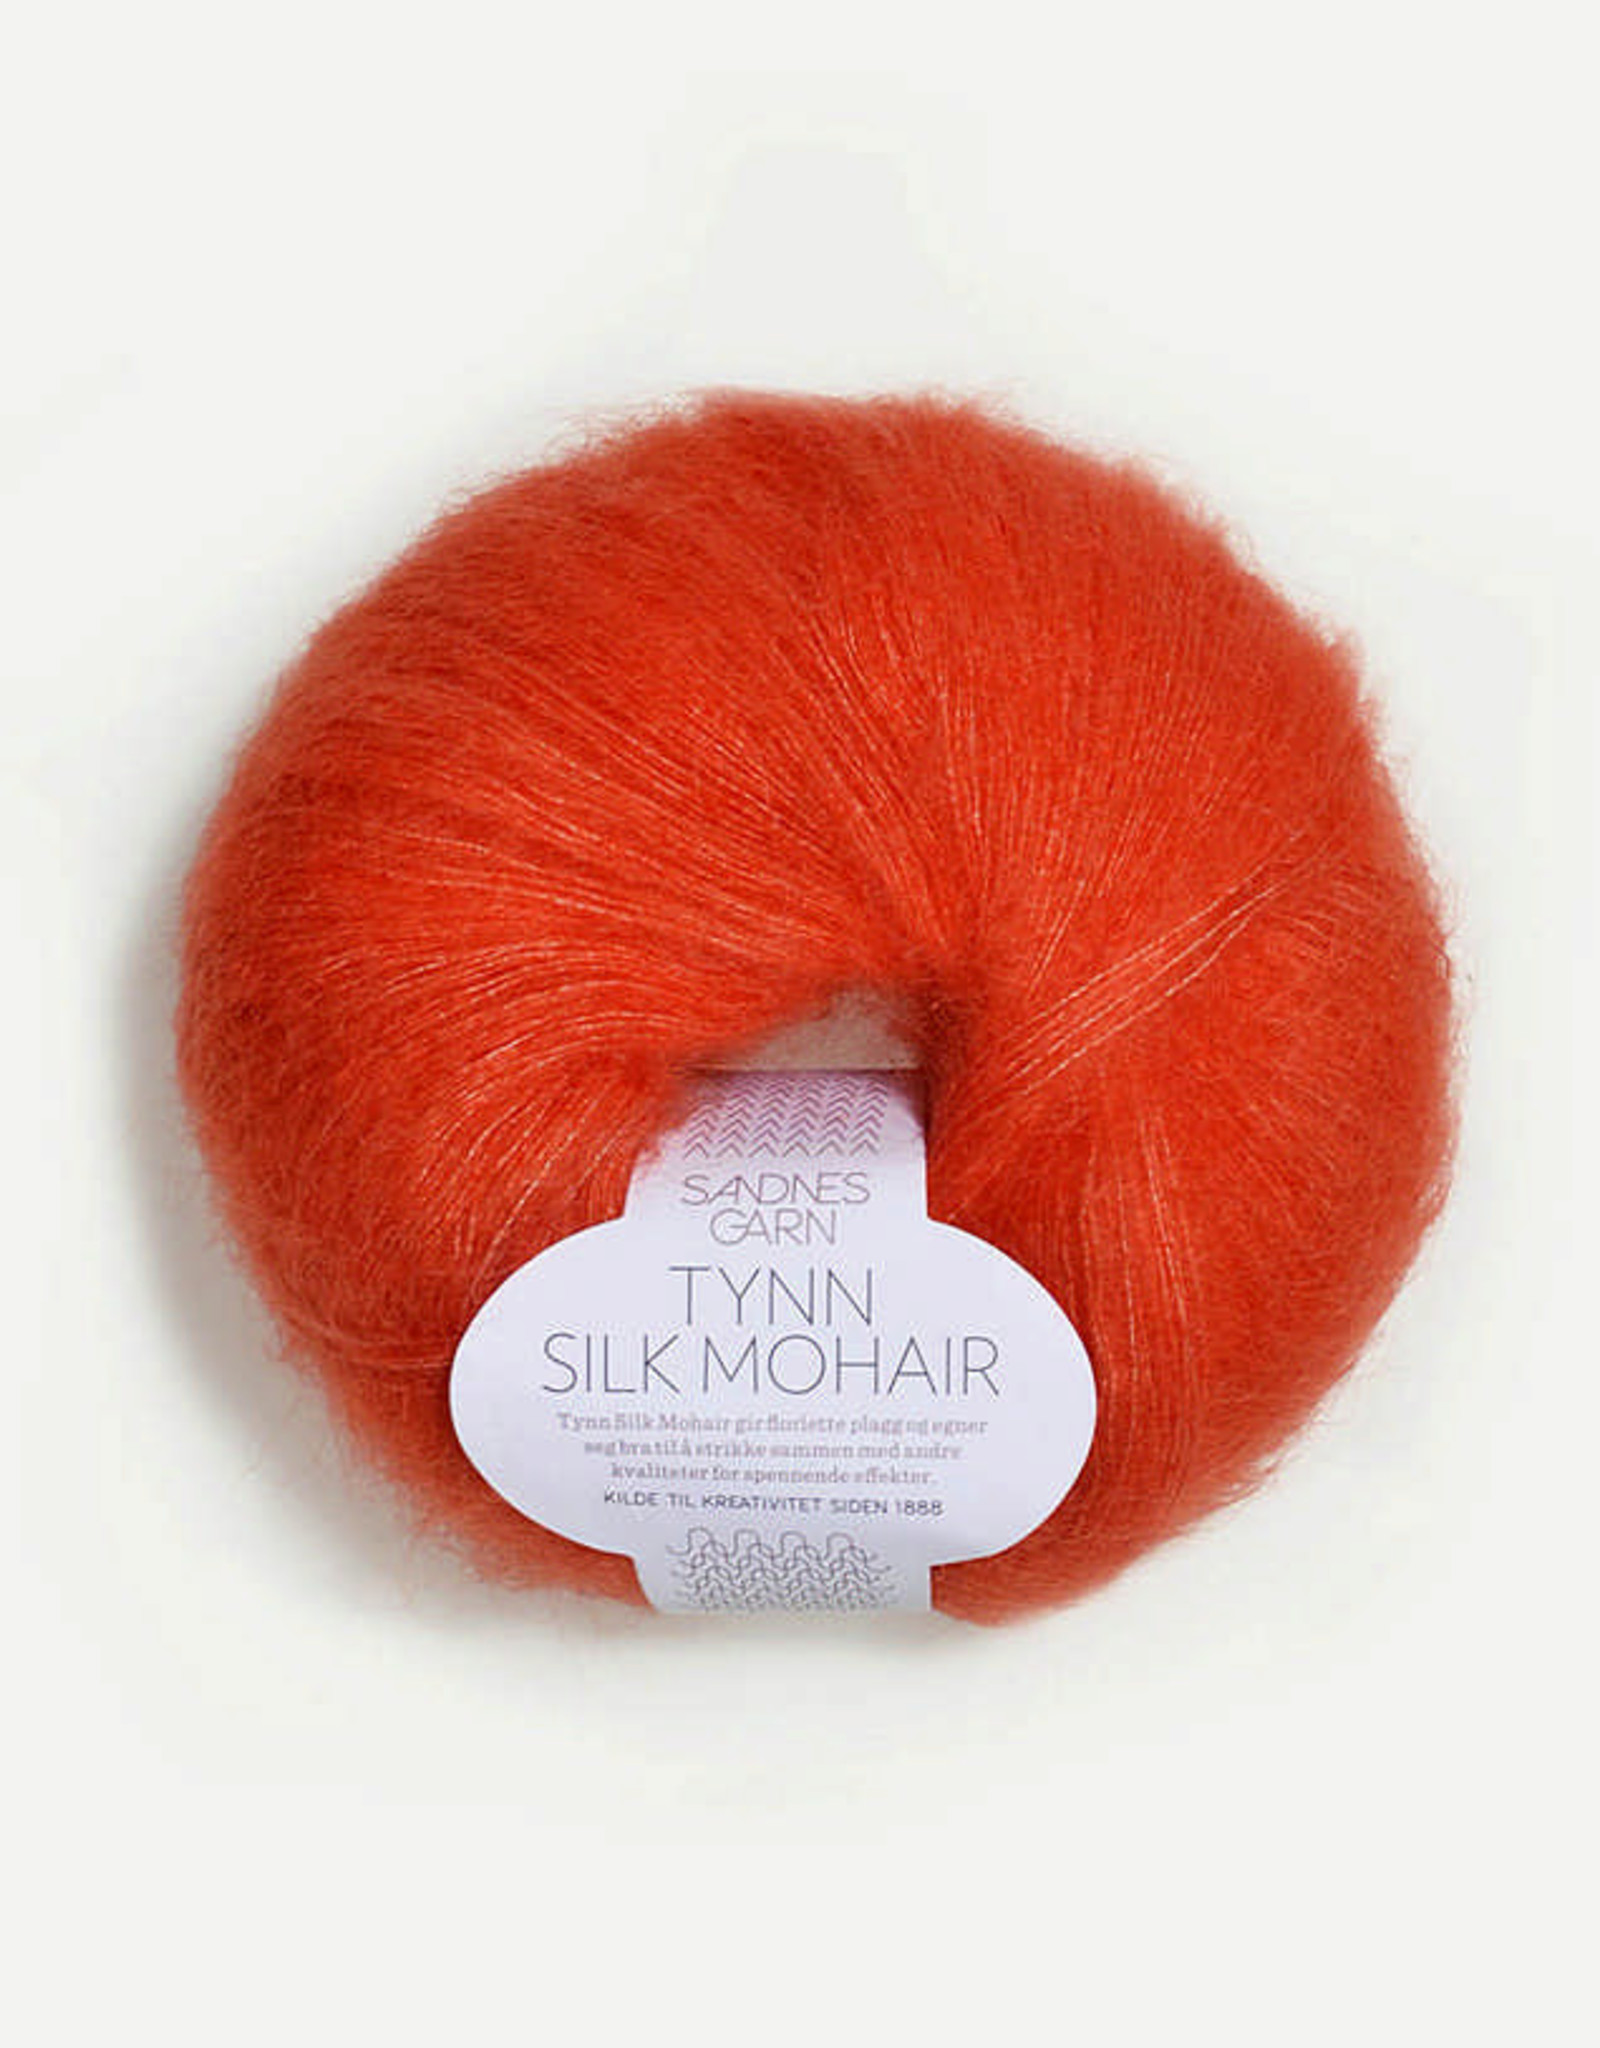 Tynn Silk Mohair 3818 orange - The Blue Purl -